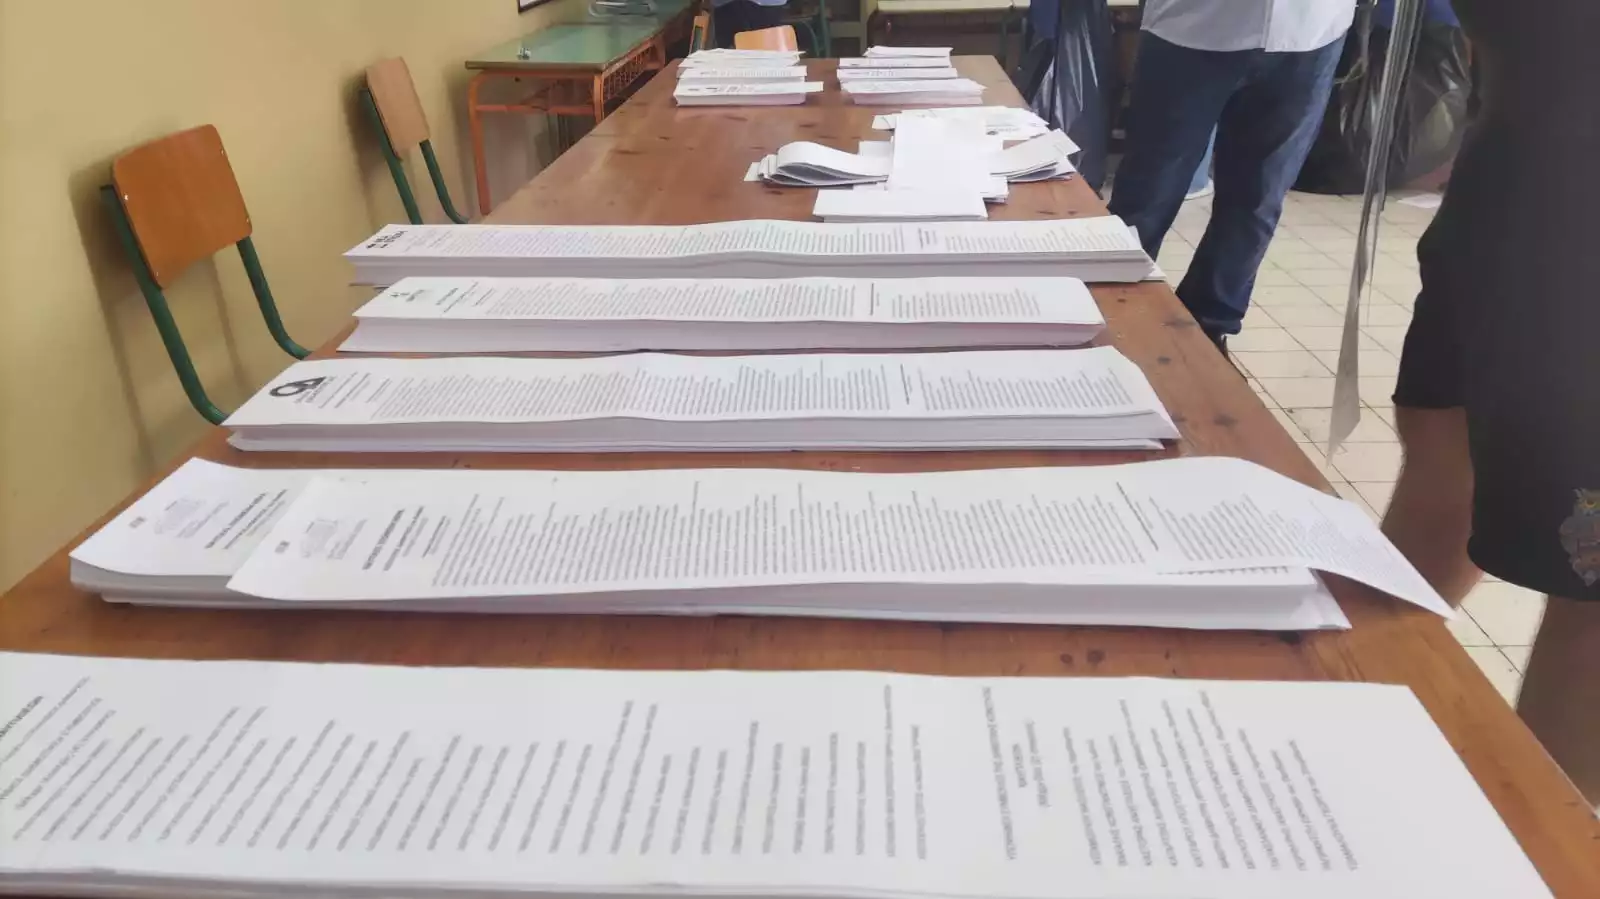 Ψηφοδέλτια «σεντόνια» ταλαιπωρούν τους ψηφοφόρους σε Άργος και Ναύπλιο